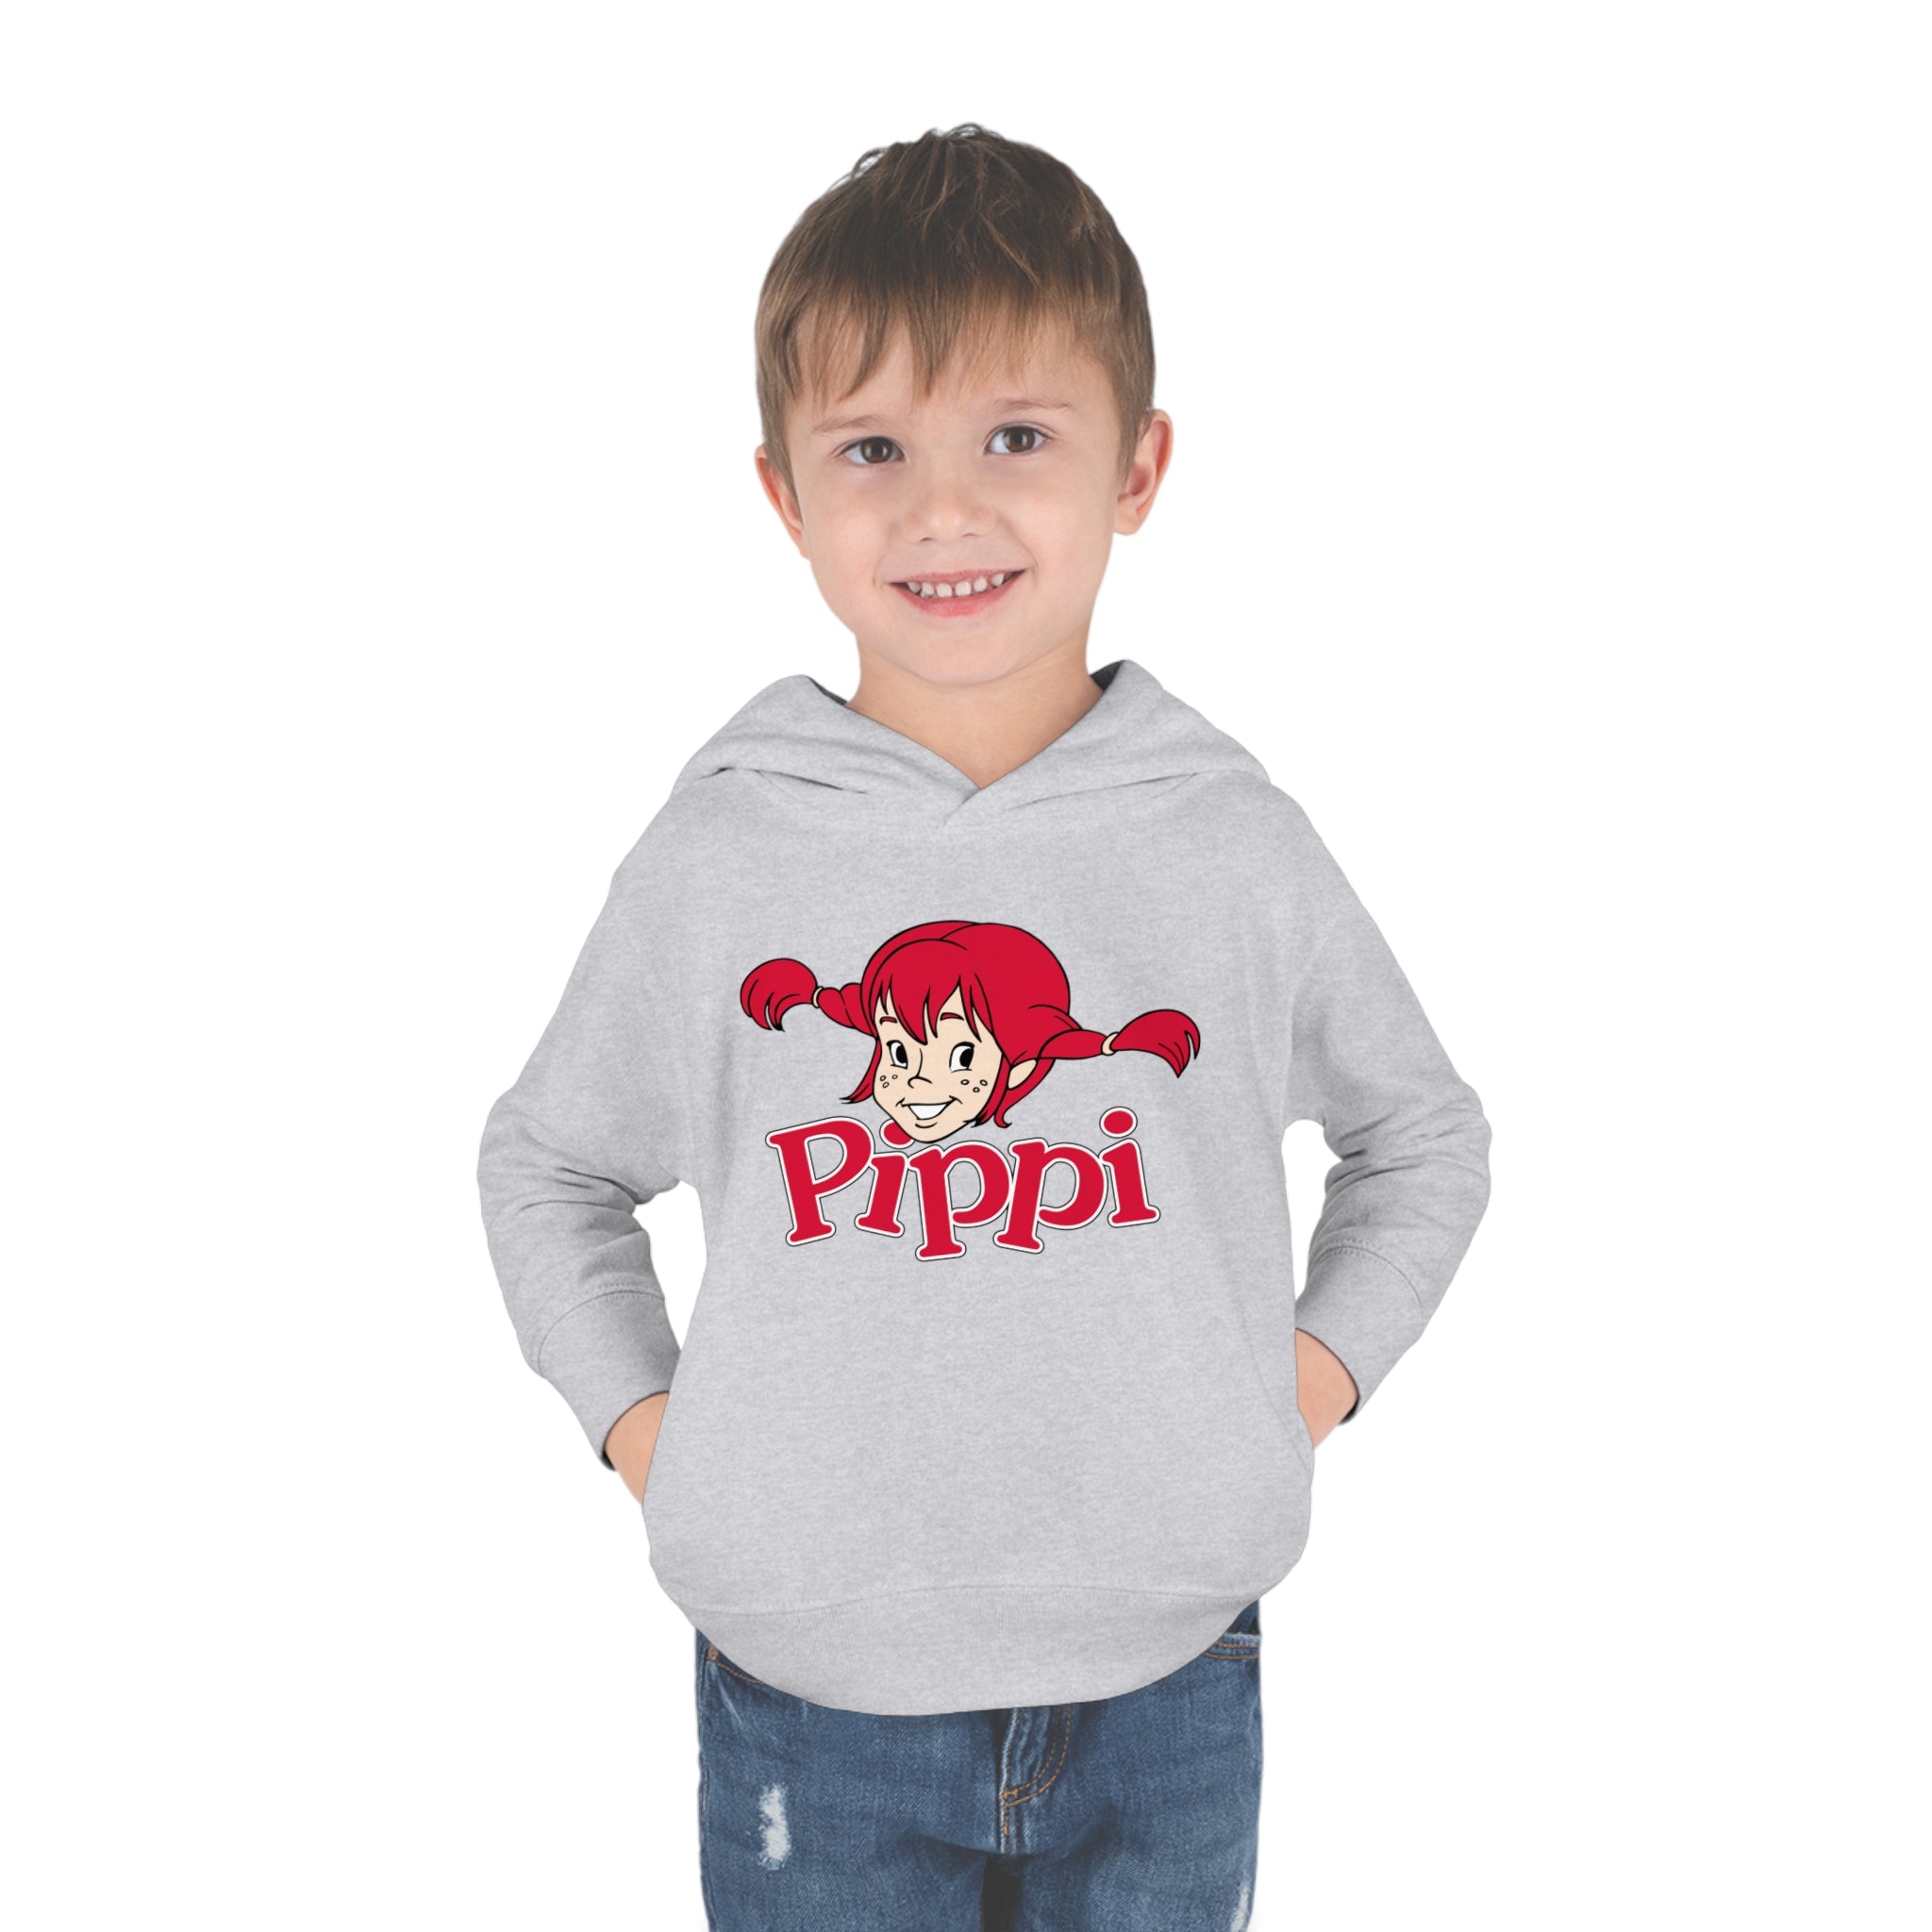 Pippi Longstocking Toddler Pullover Fleece Hoodie